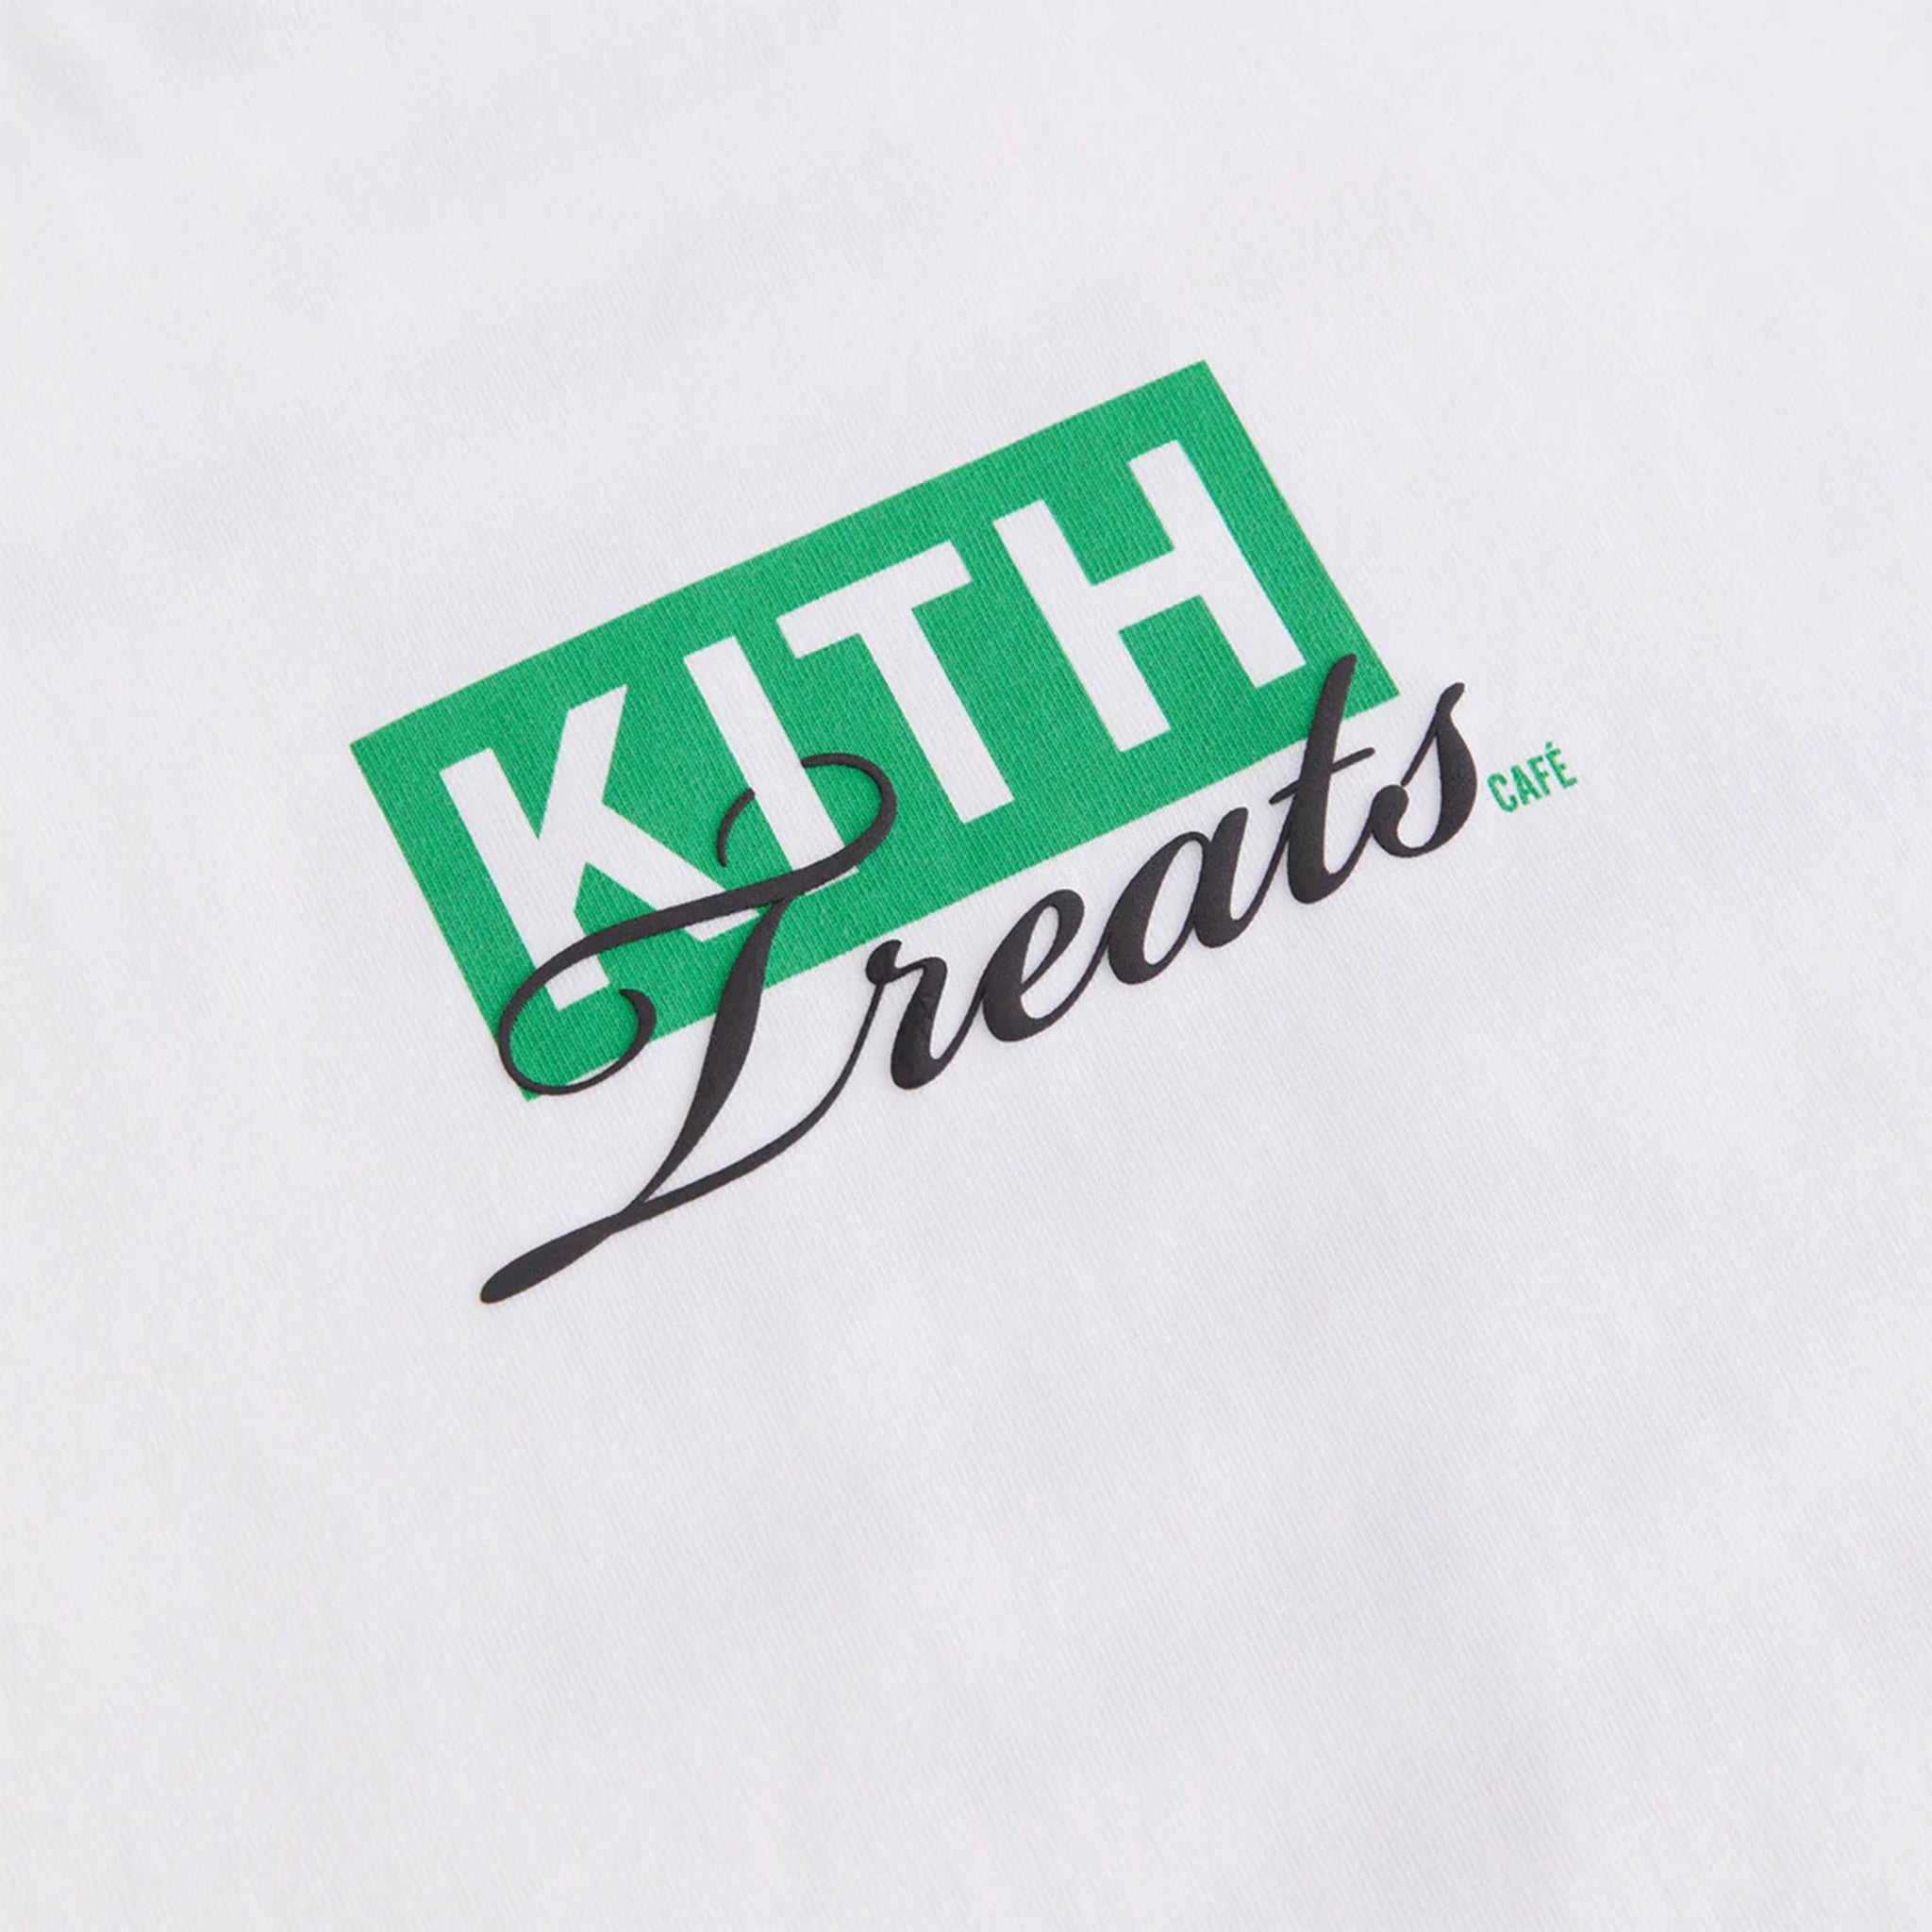 Kith x Bearbrick Logo Tee - Black size Large